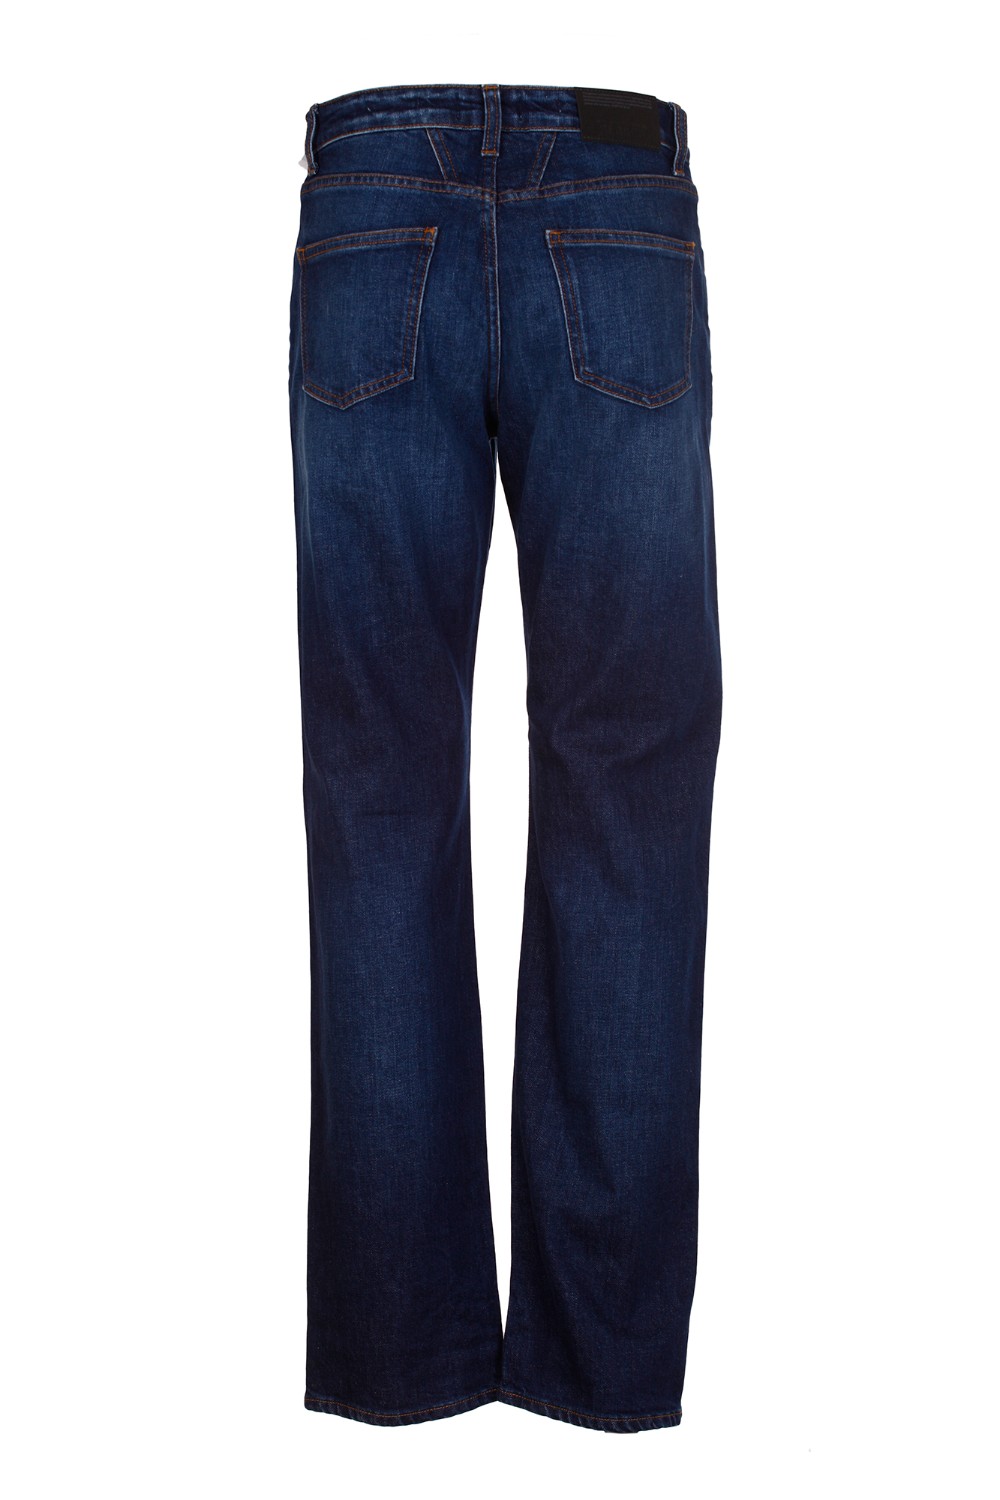 shop CLOSED Saldi Jeans: Closed jeans in cotone.
Vita media.
Gamba morbida.
Composizione: 98% cotone 2% elastan.
Made in Italy.. C91994 05E 3R-DBL number 975625